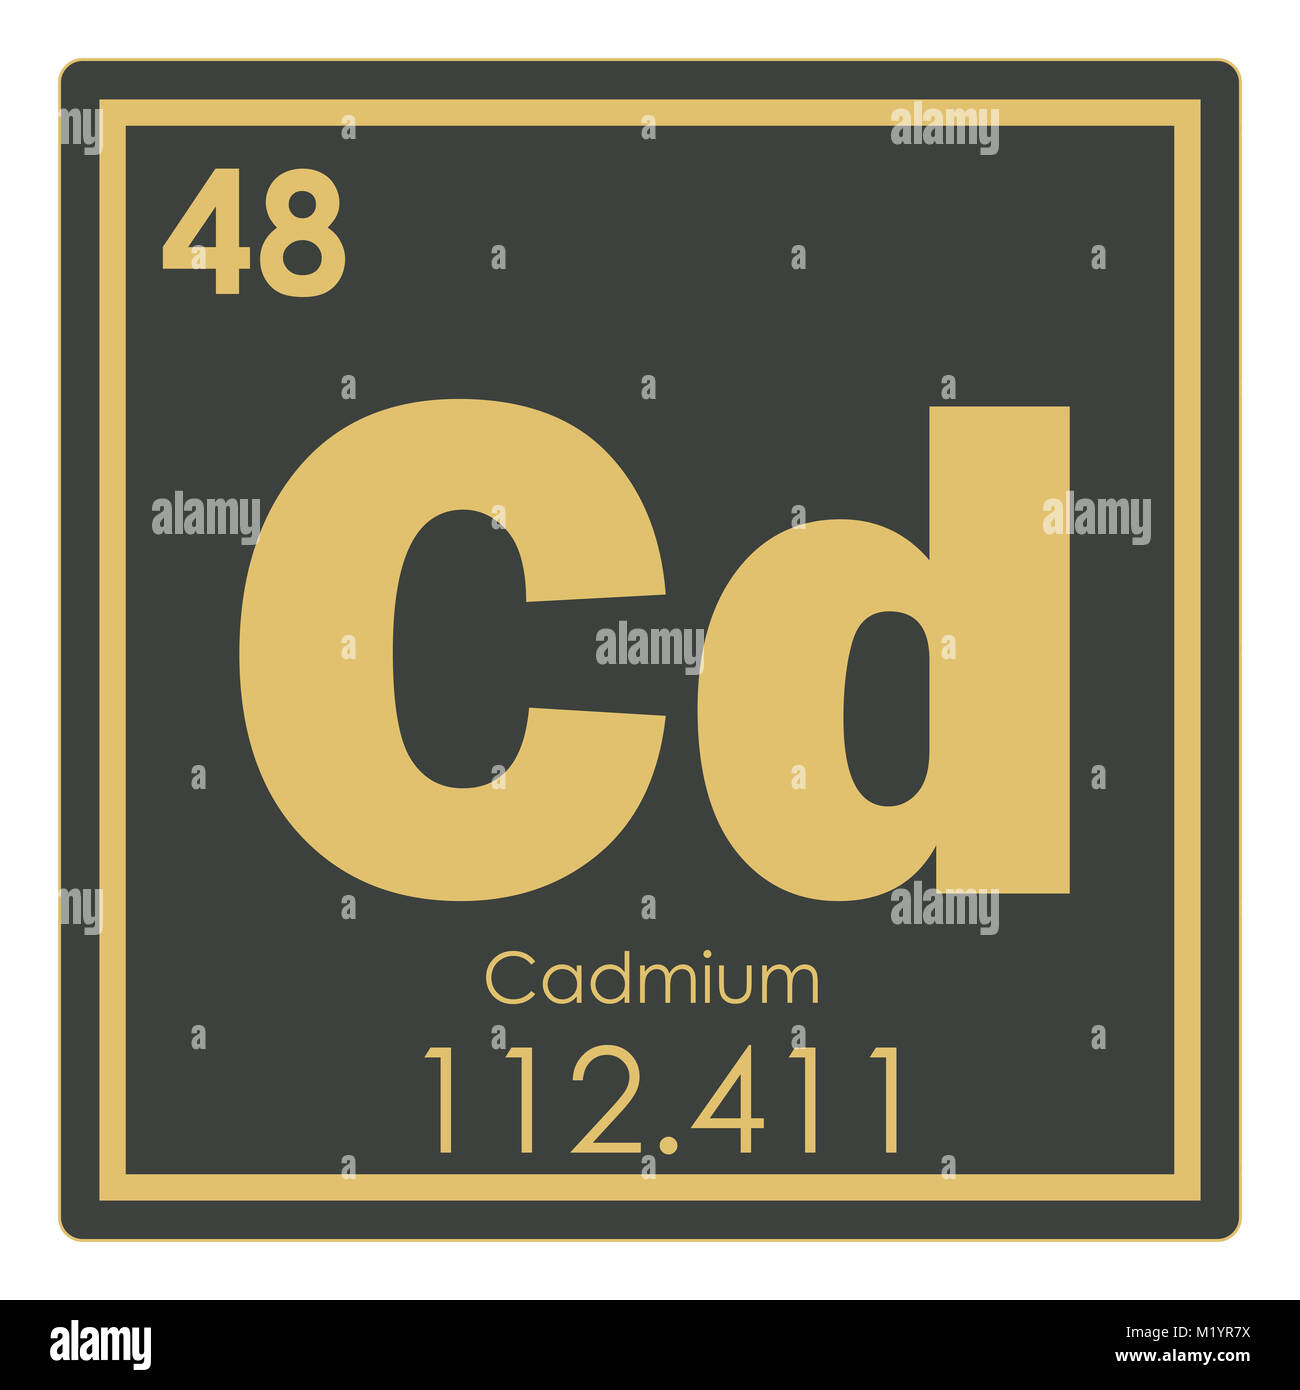 Кадмий символ элемента. CD химический элемент. Кадмий химический элемент. Кадмий химический элемент в таблице. CD кадмий.